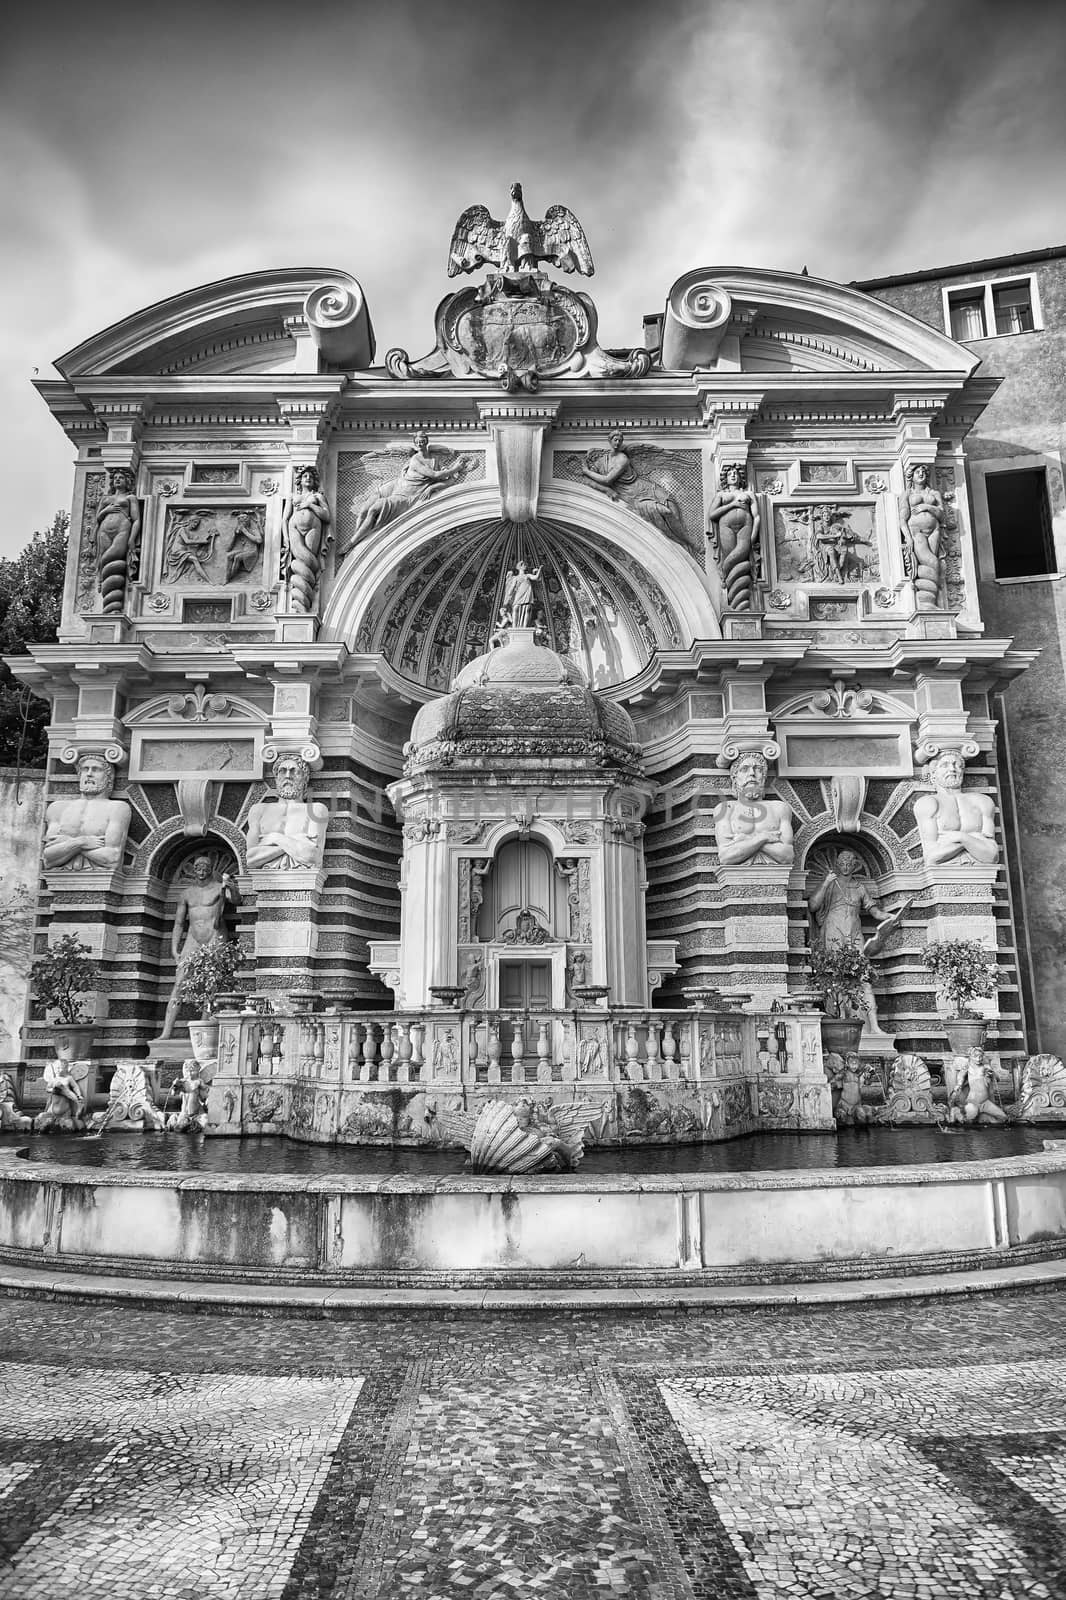 The Fountain of the Organ, Villa d'Este, Tivoli, Italy by marcorubino